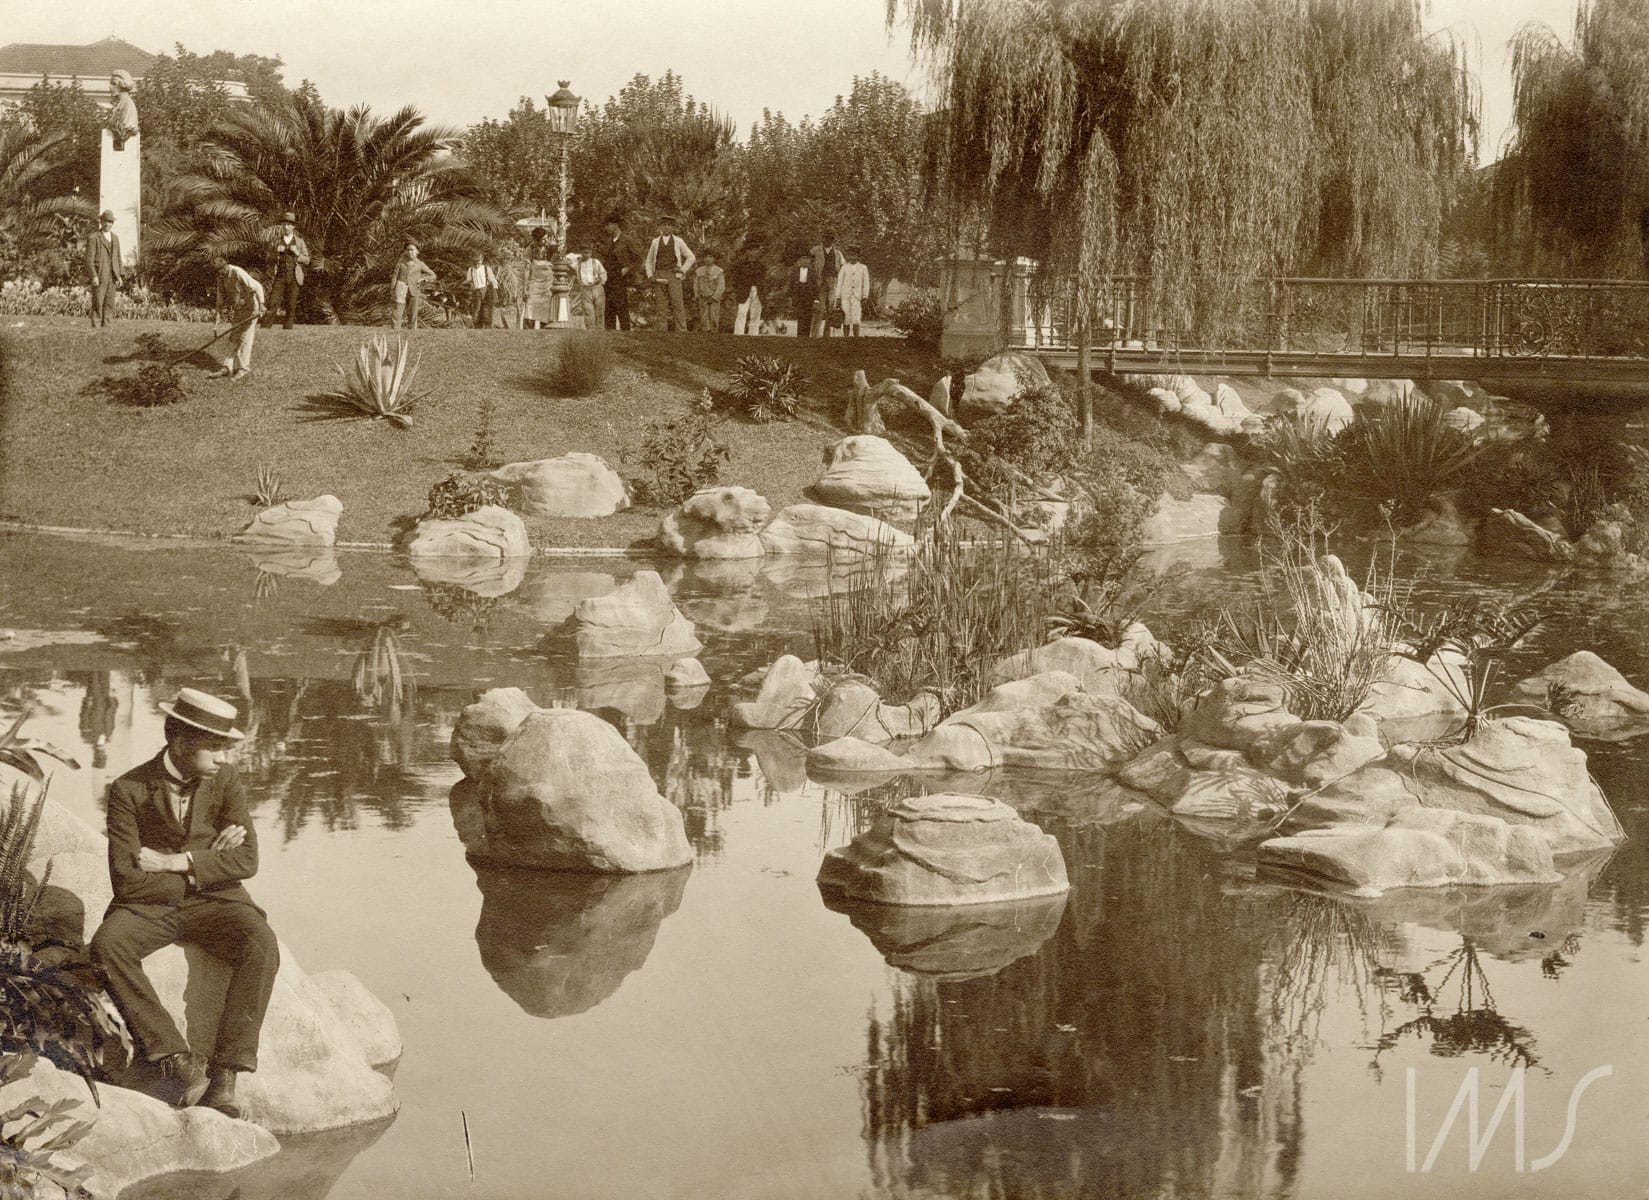  Ponte sobre lago na praça da República, c. 1910. Foto: Vincenzo Pastore / Acervo IMS.